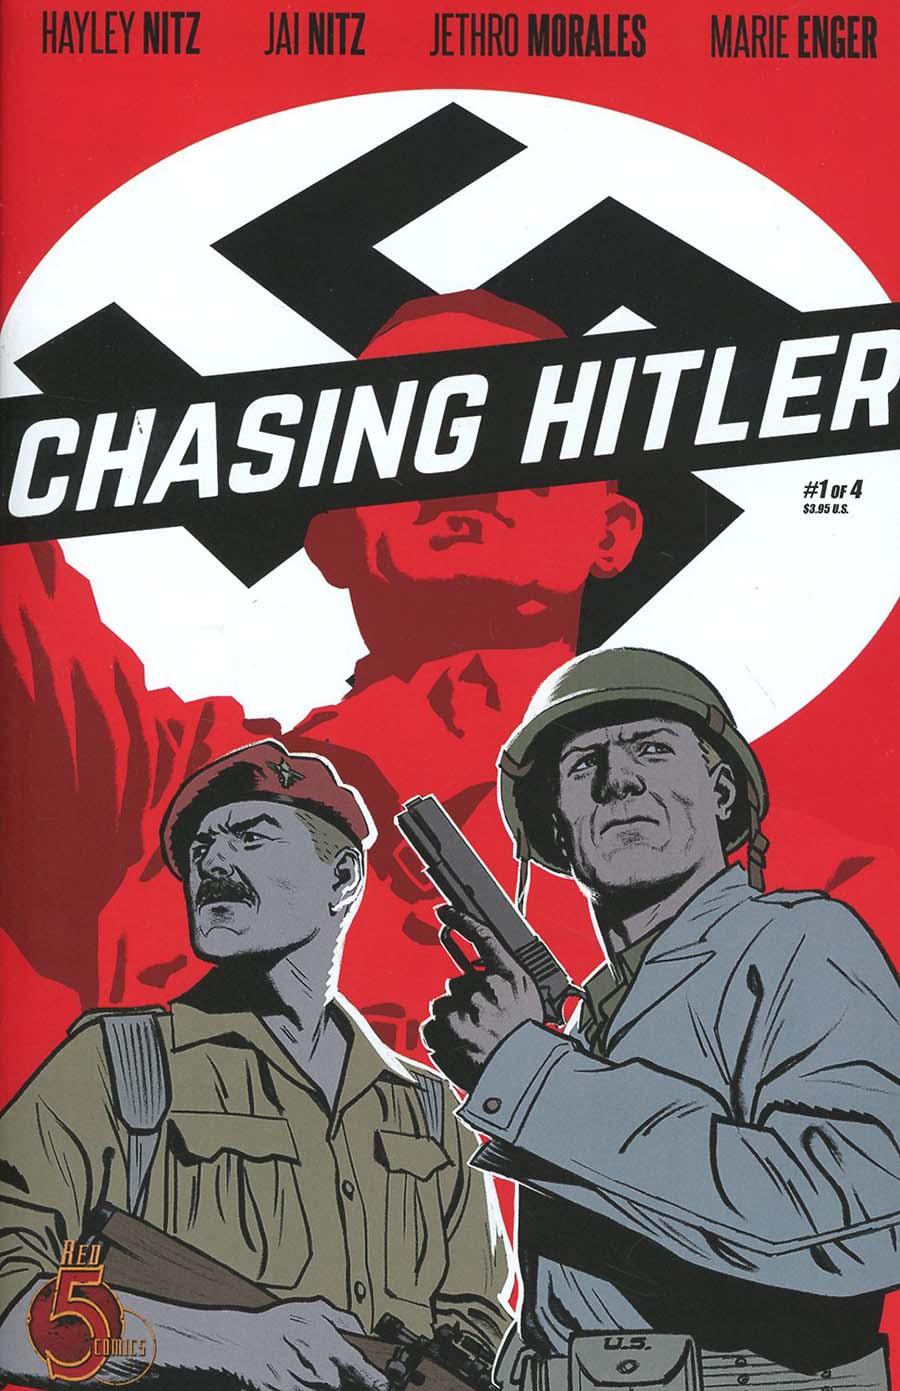 Chasing Hitler Vol. 1 #1